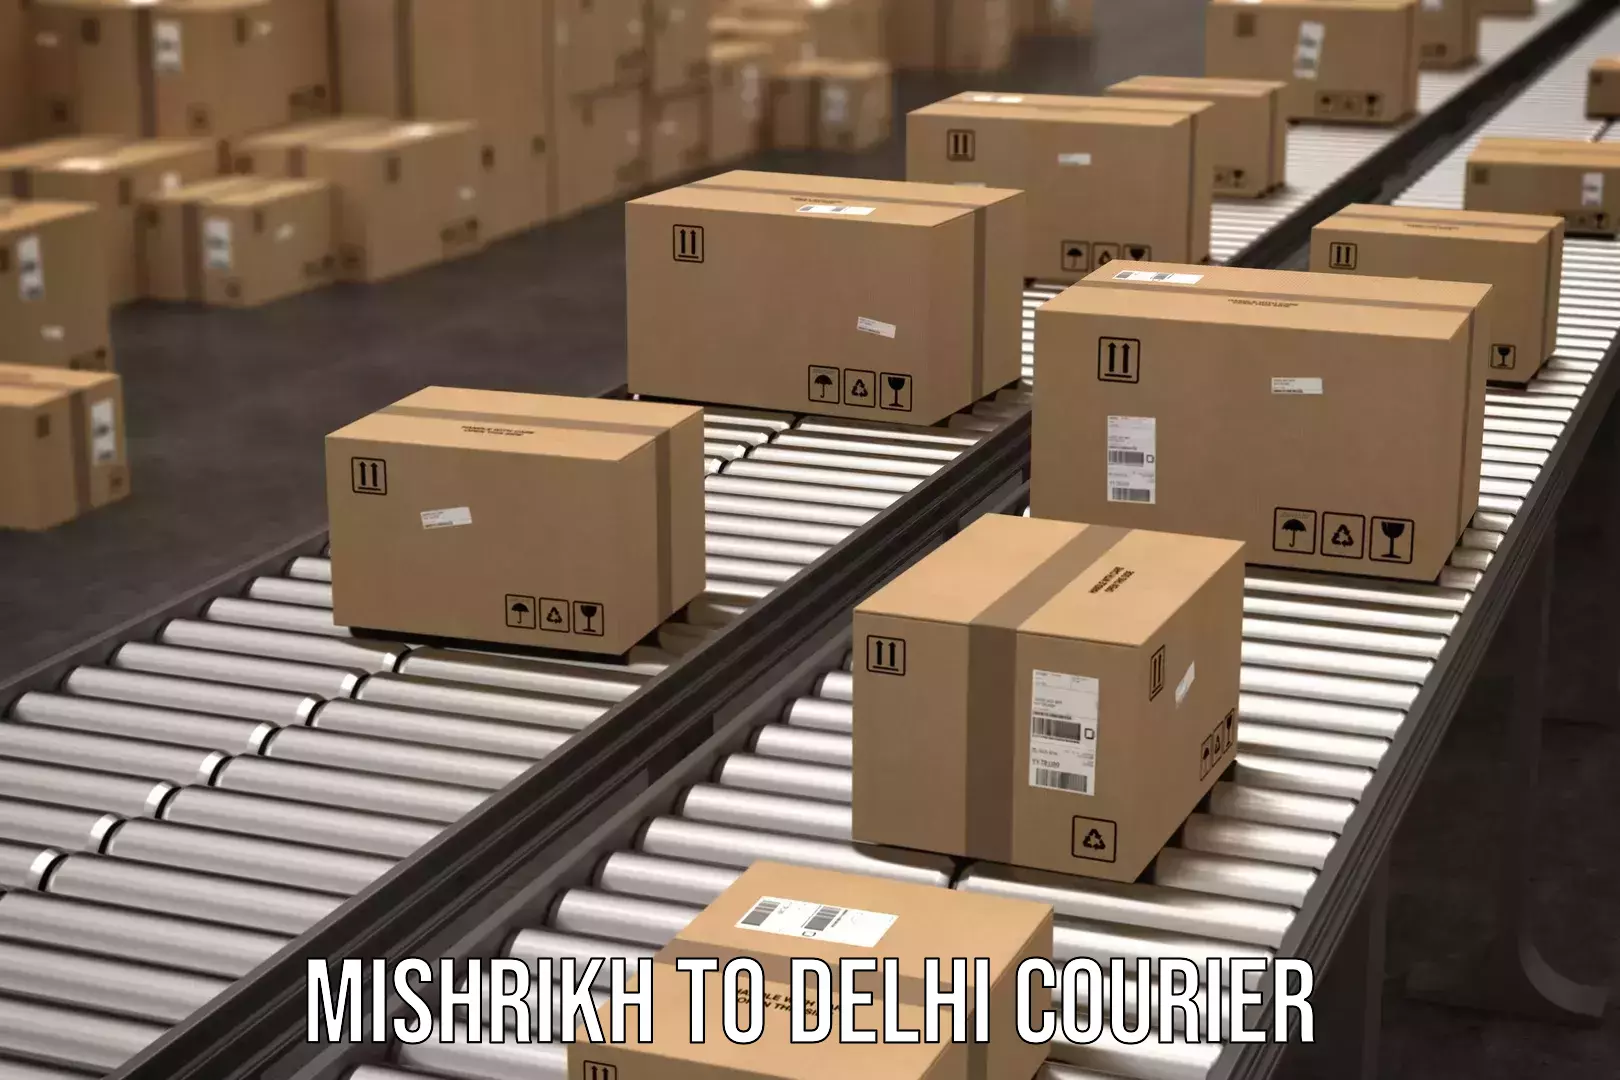 24/7 courier service Mishrikh to Kalkaji